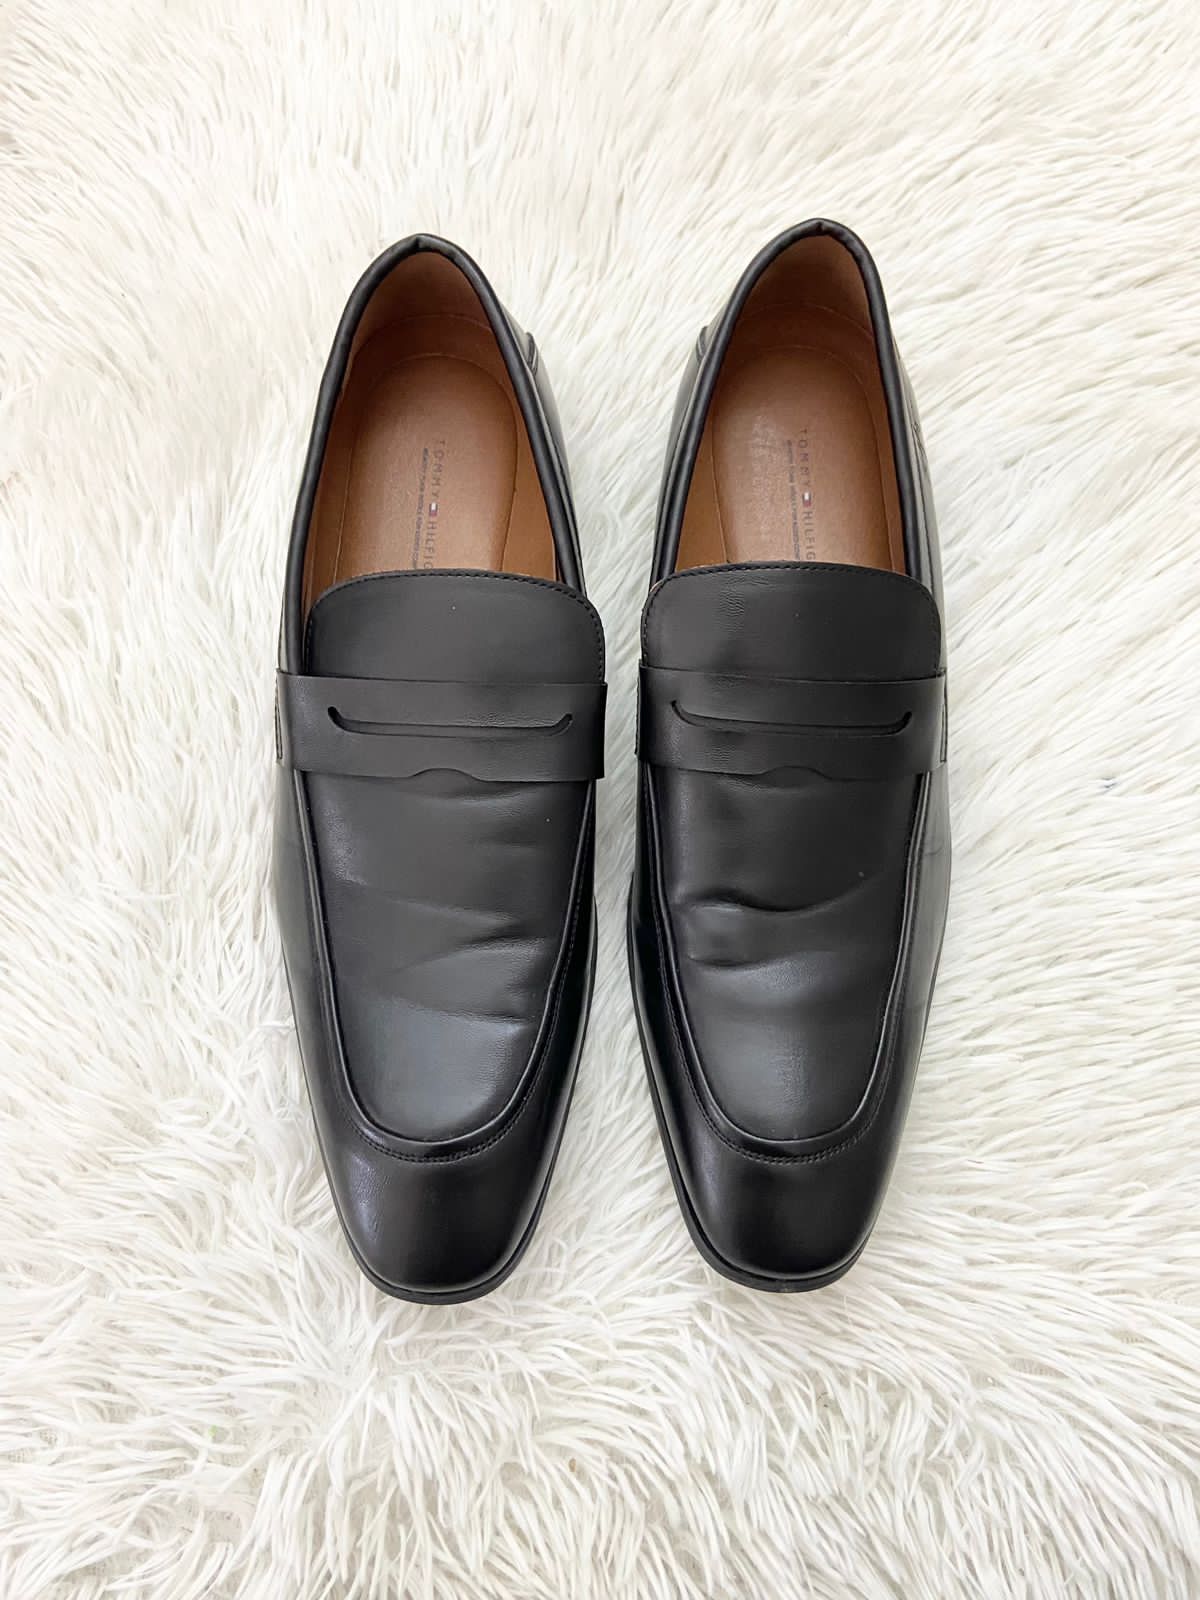 Zapatos TOMMY HILFIGER original, negros lisos con punta y pequeño logotipo de la marca en la parte de atrás.